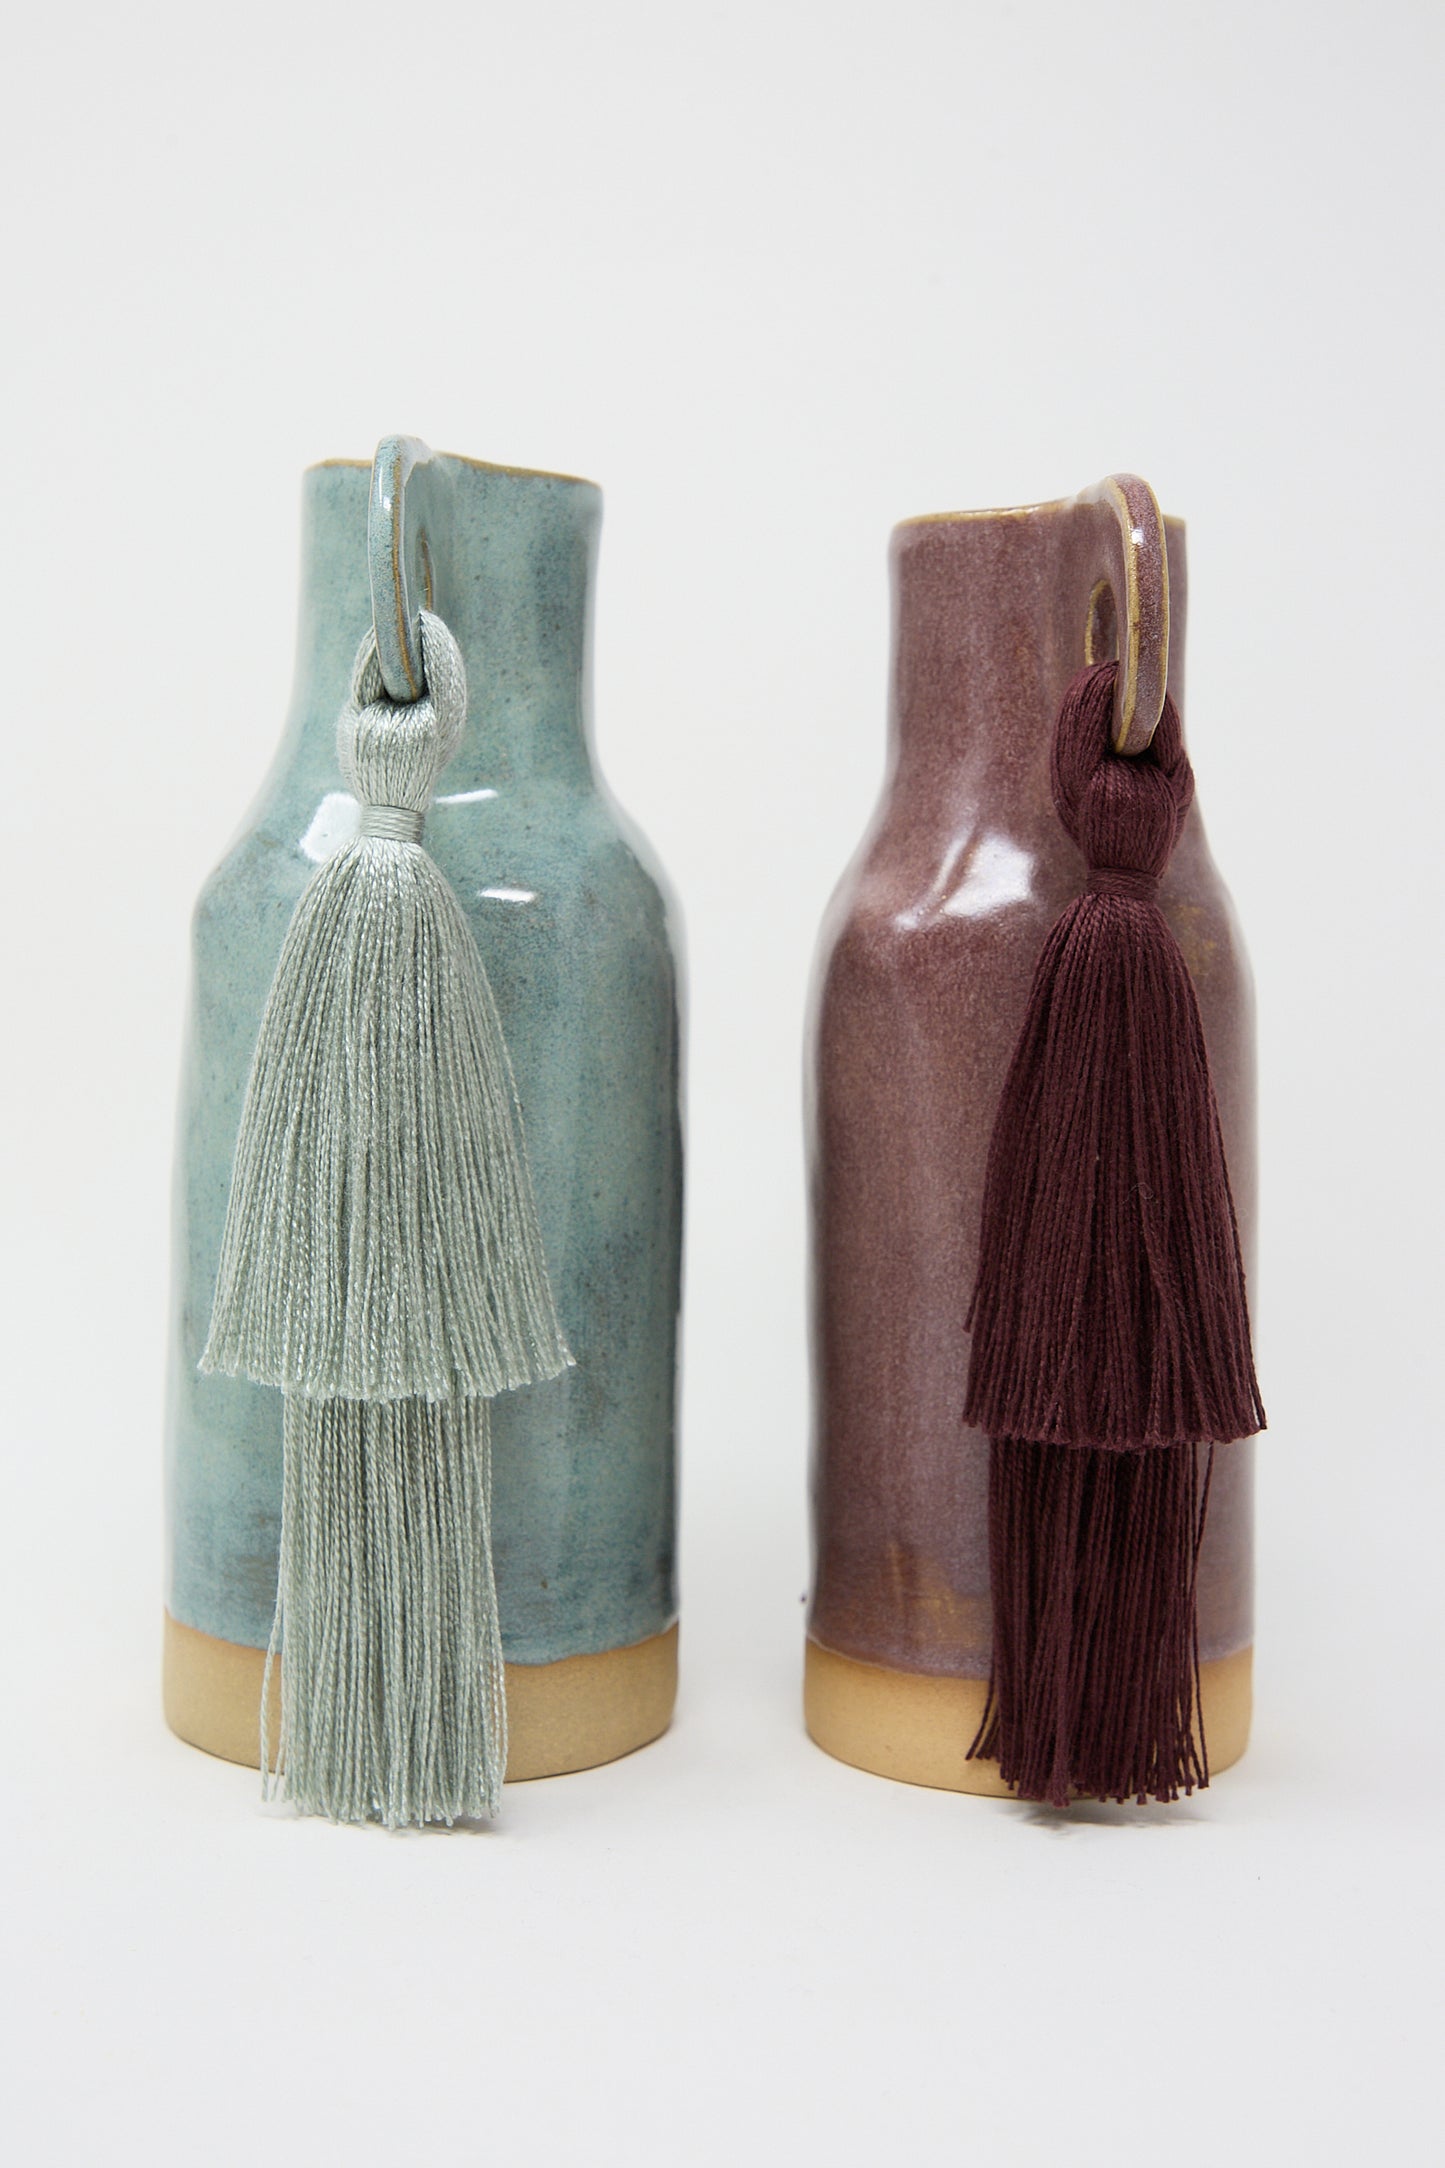 Two Karen Tinney handmade ceramic bottles with tassels on a white background.